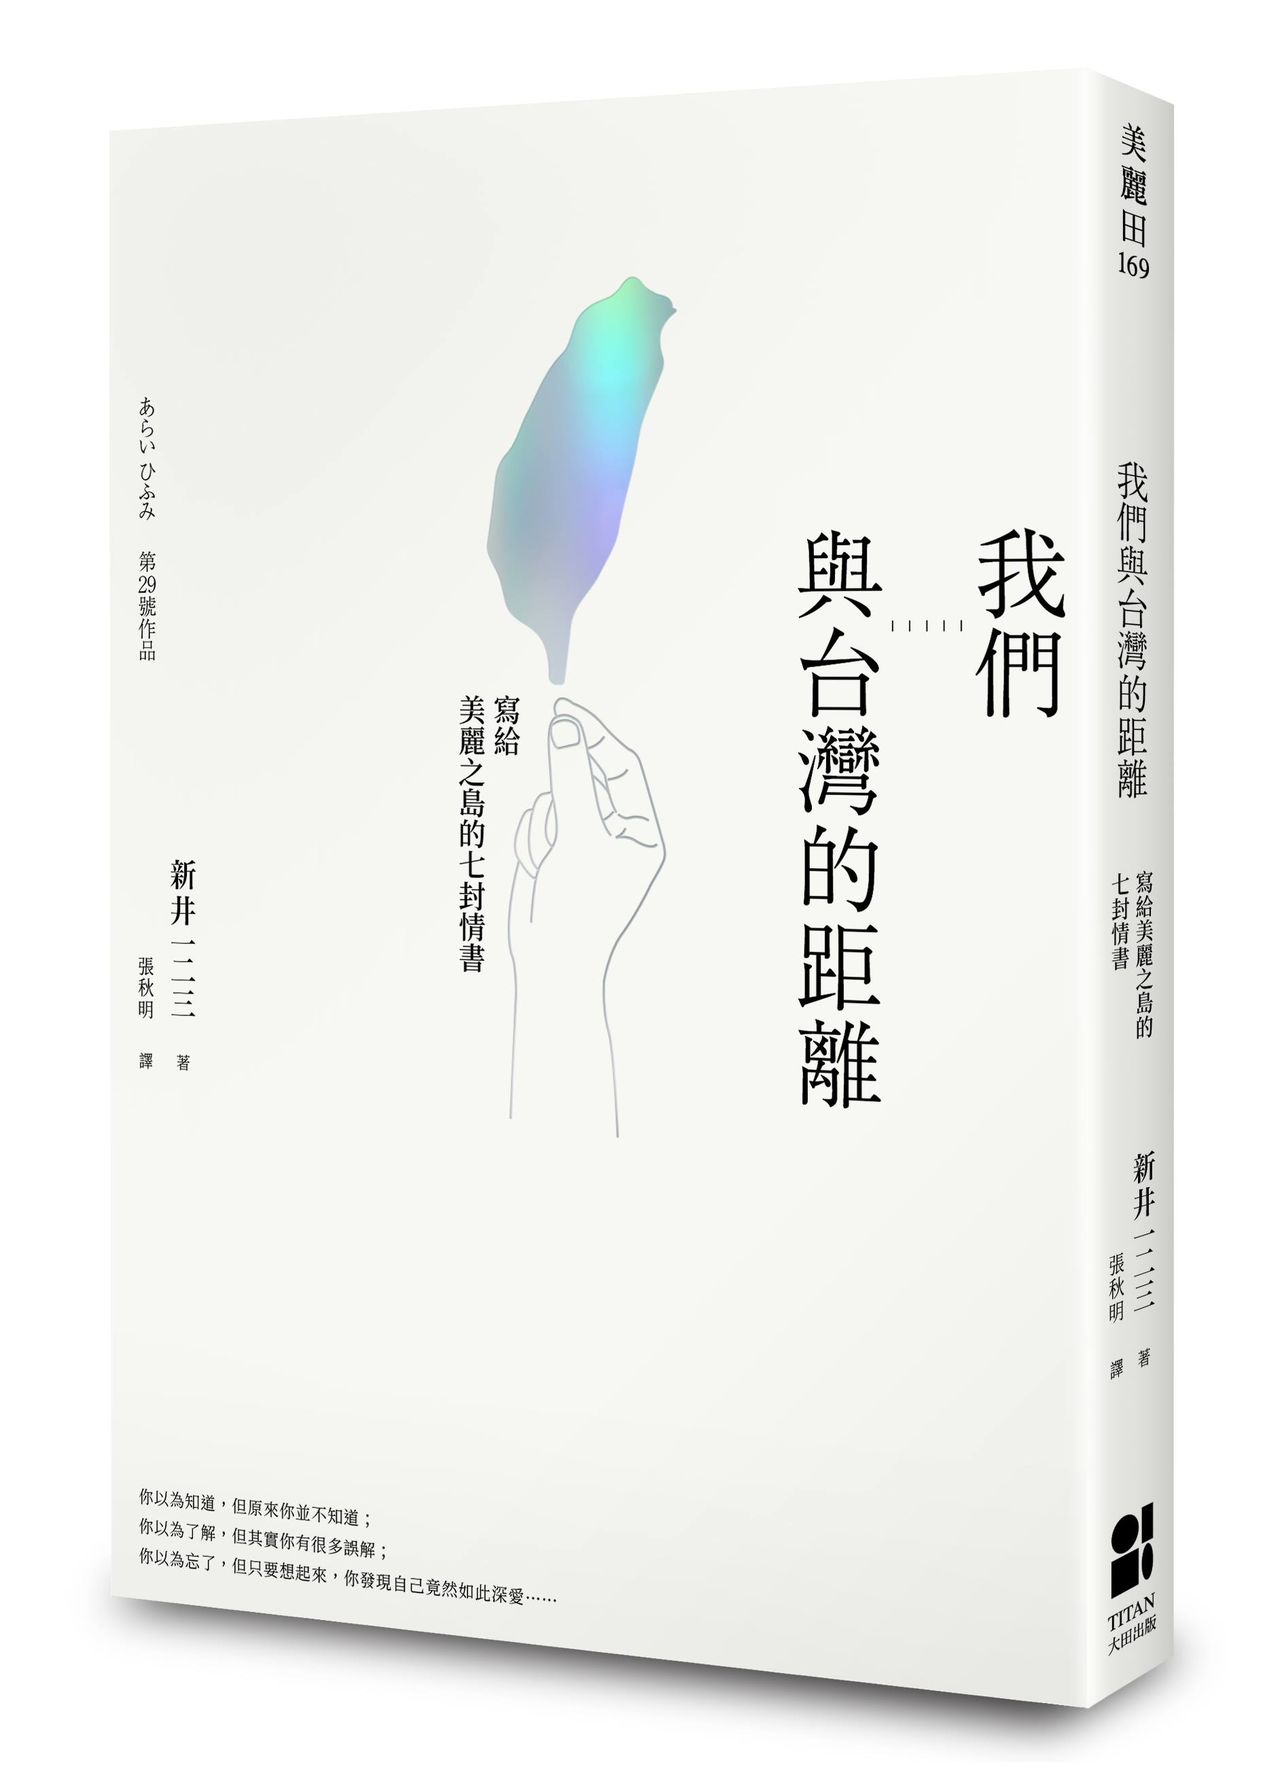 新井氏の台湾における29冊目の著書『 我們與台灣的距離』（大田出版社提供）